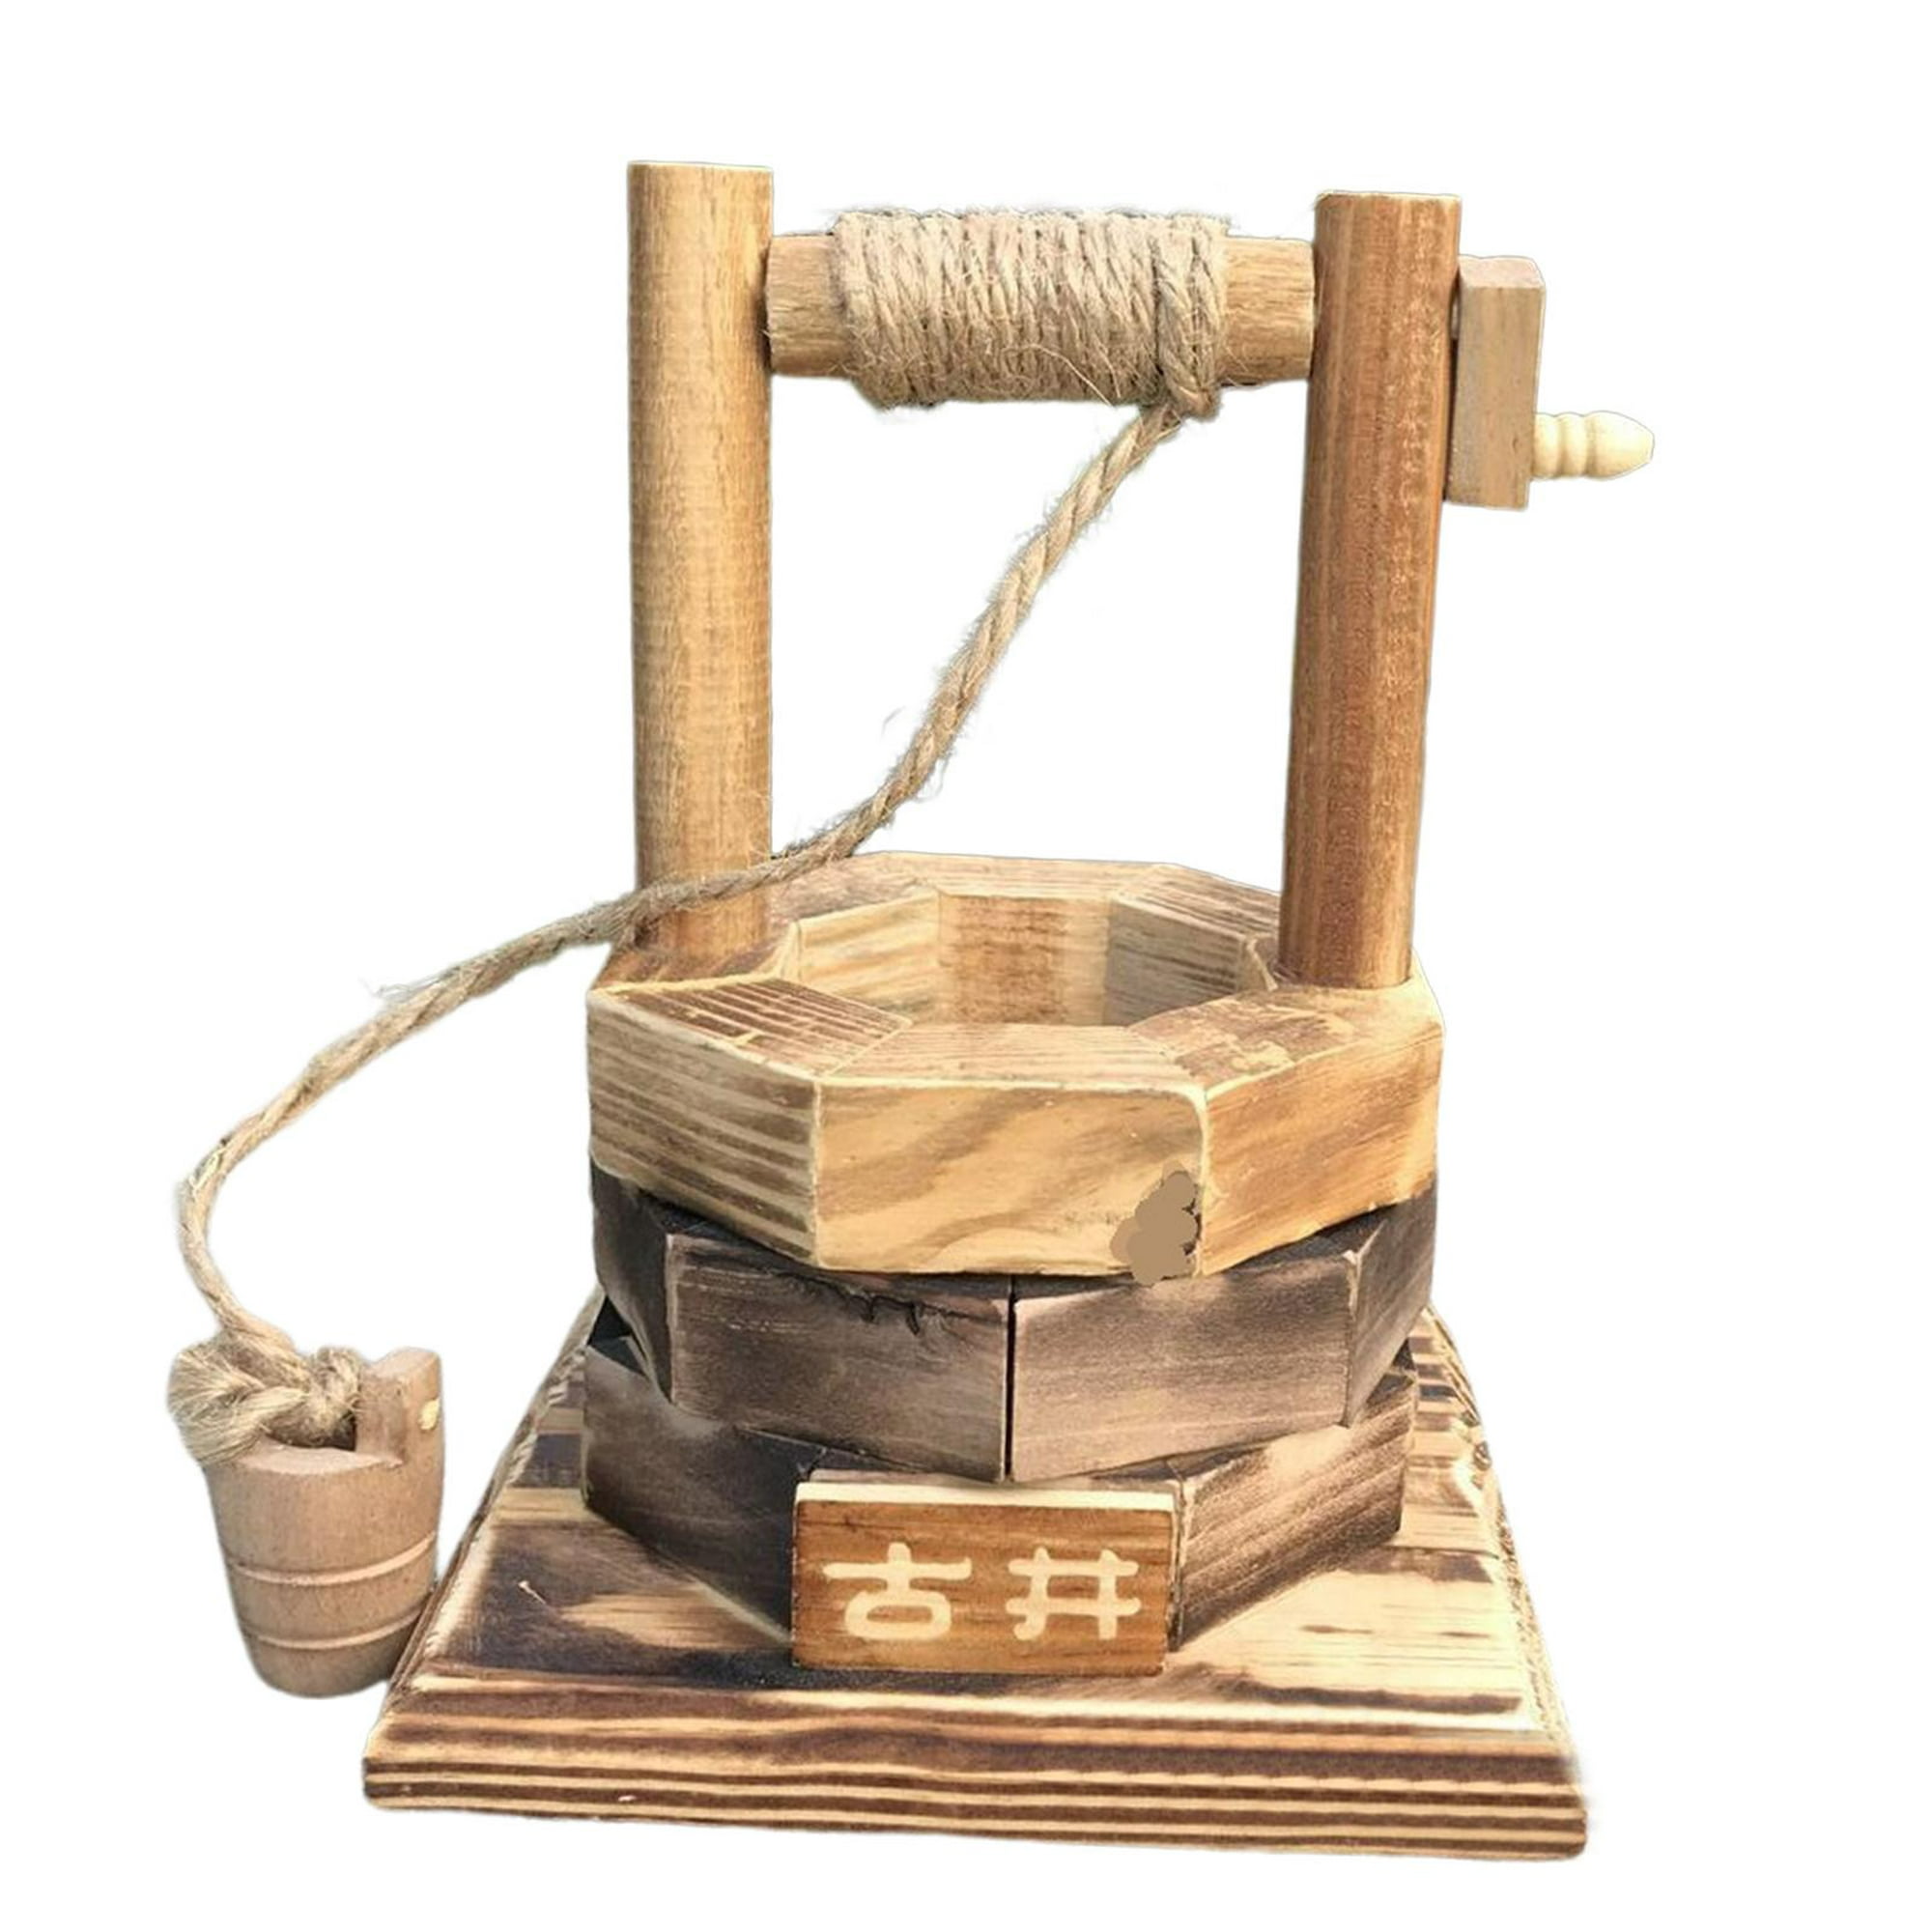 Poste de madera flotante de 3 pies de largo (paquete de 4) - Hermoso jarrón  o decoración de manualidades, difícil de encontrar, seleccionado a mano